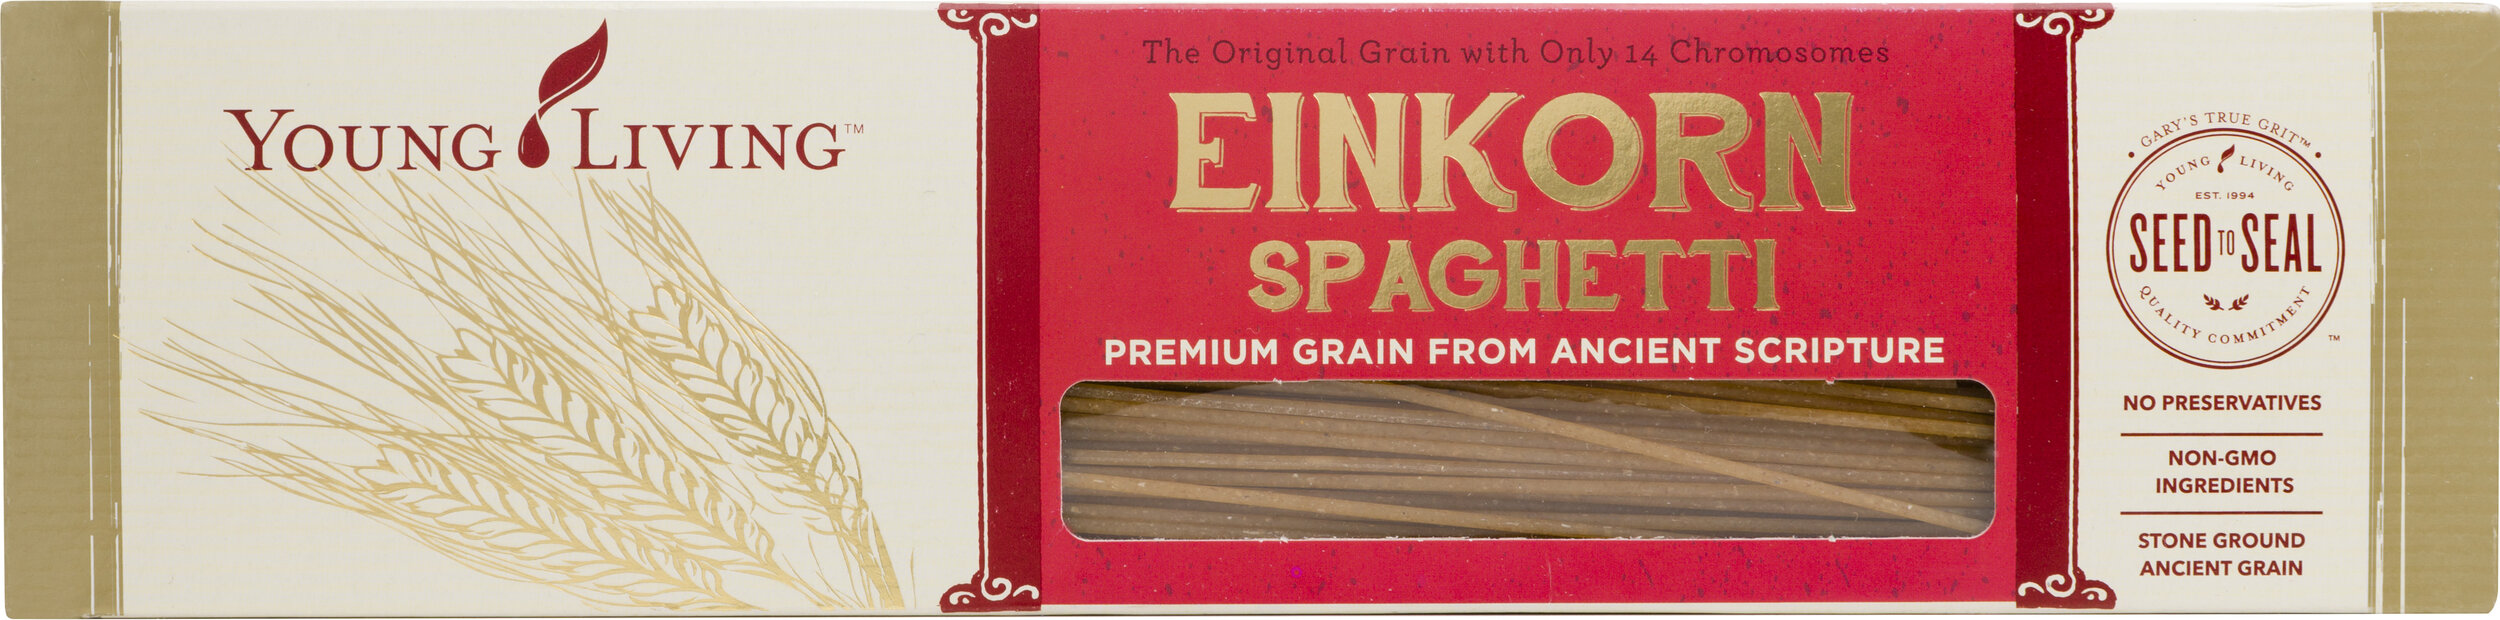 Garys True Grit Einkorn Spaghetti Silo.jpg